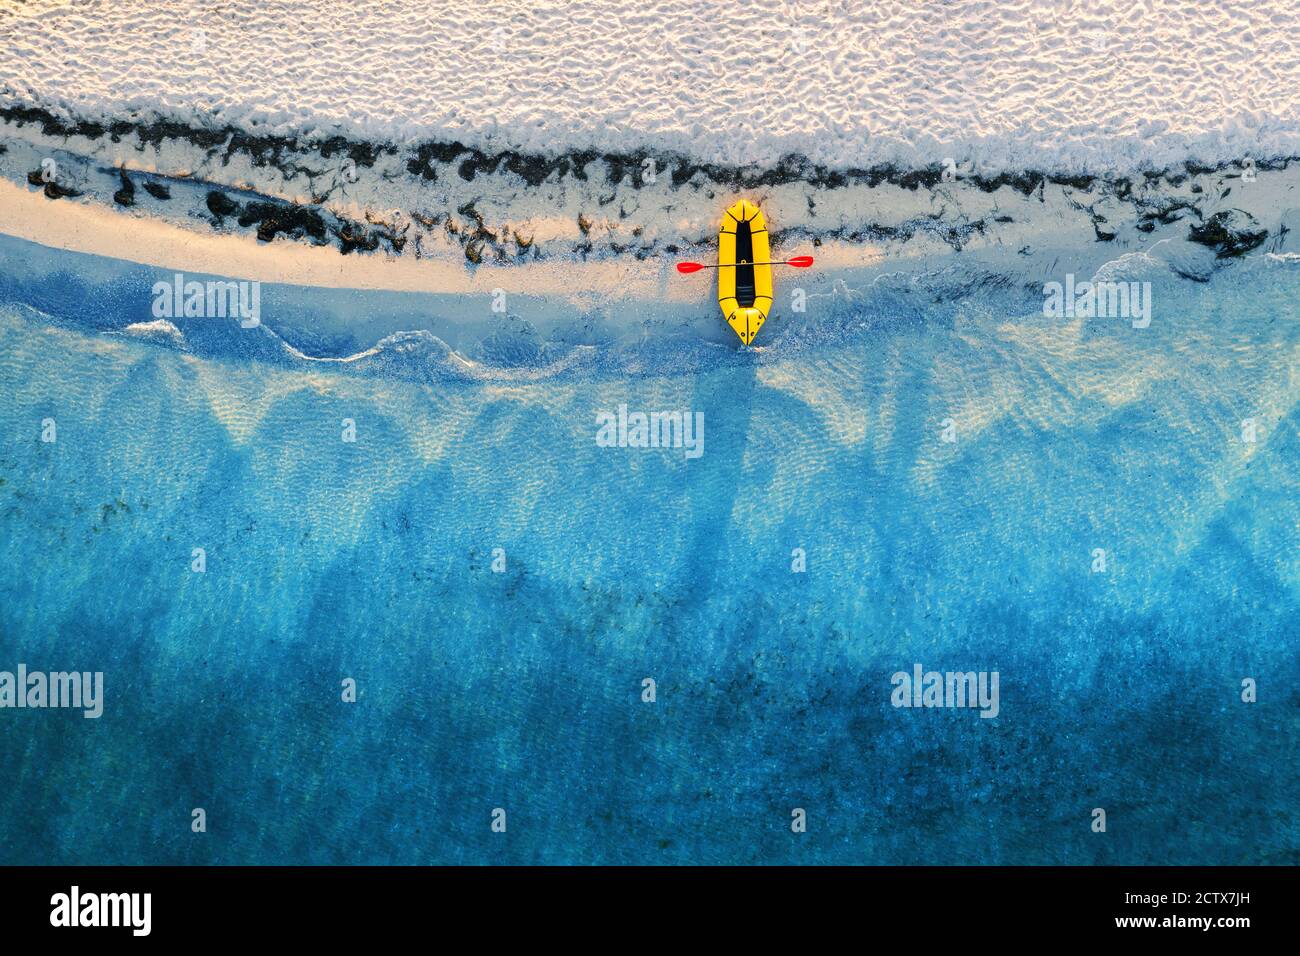 Bote de goma de tipo careta amarilla con padel rojo y olas de agua turquesa desde la vista superior. Playa con arena amarilla resplandeciente por la luz del sol. Viajes vacaciones de verano paisaje marino fondo de drone Foto de stock